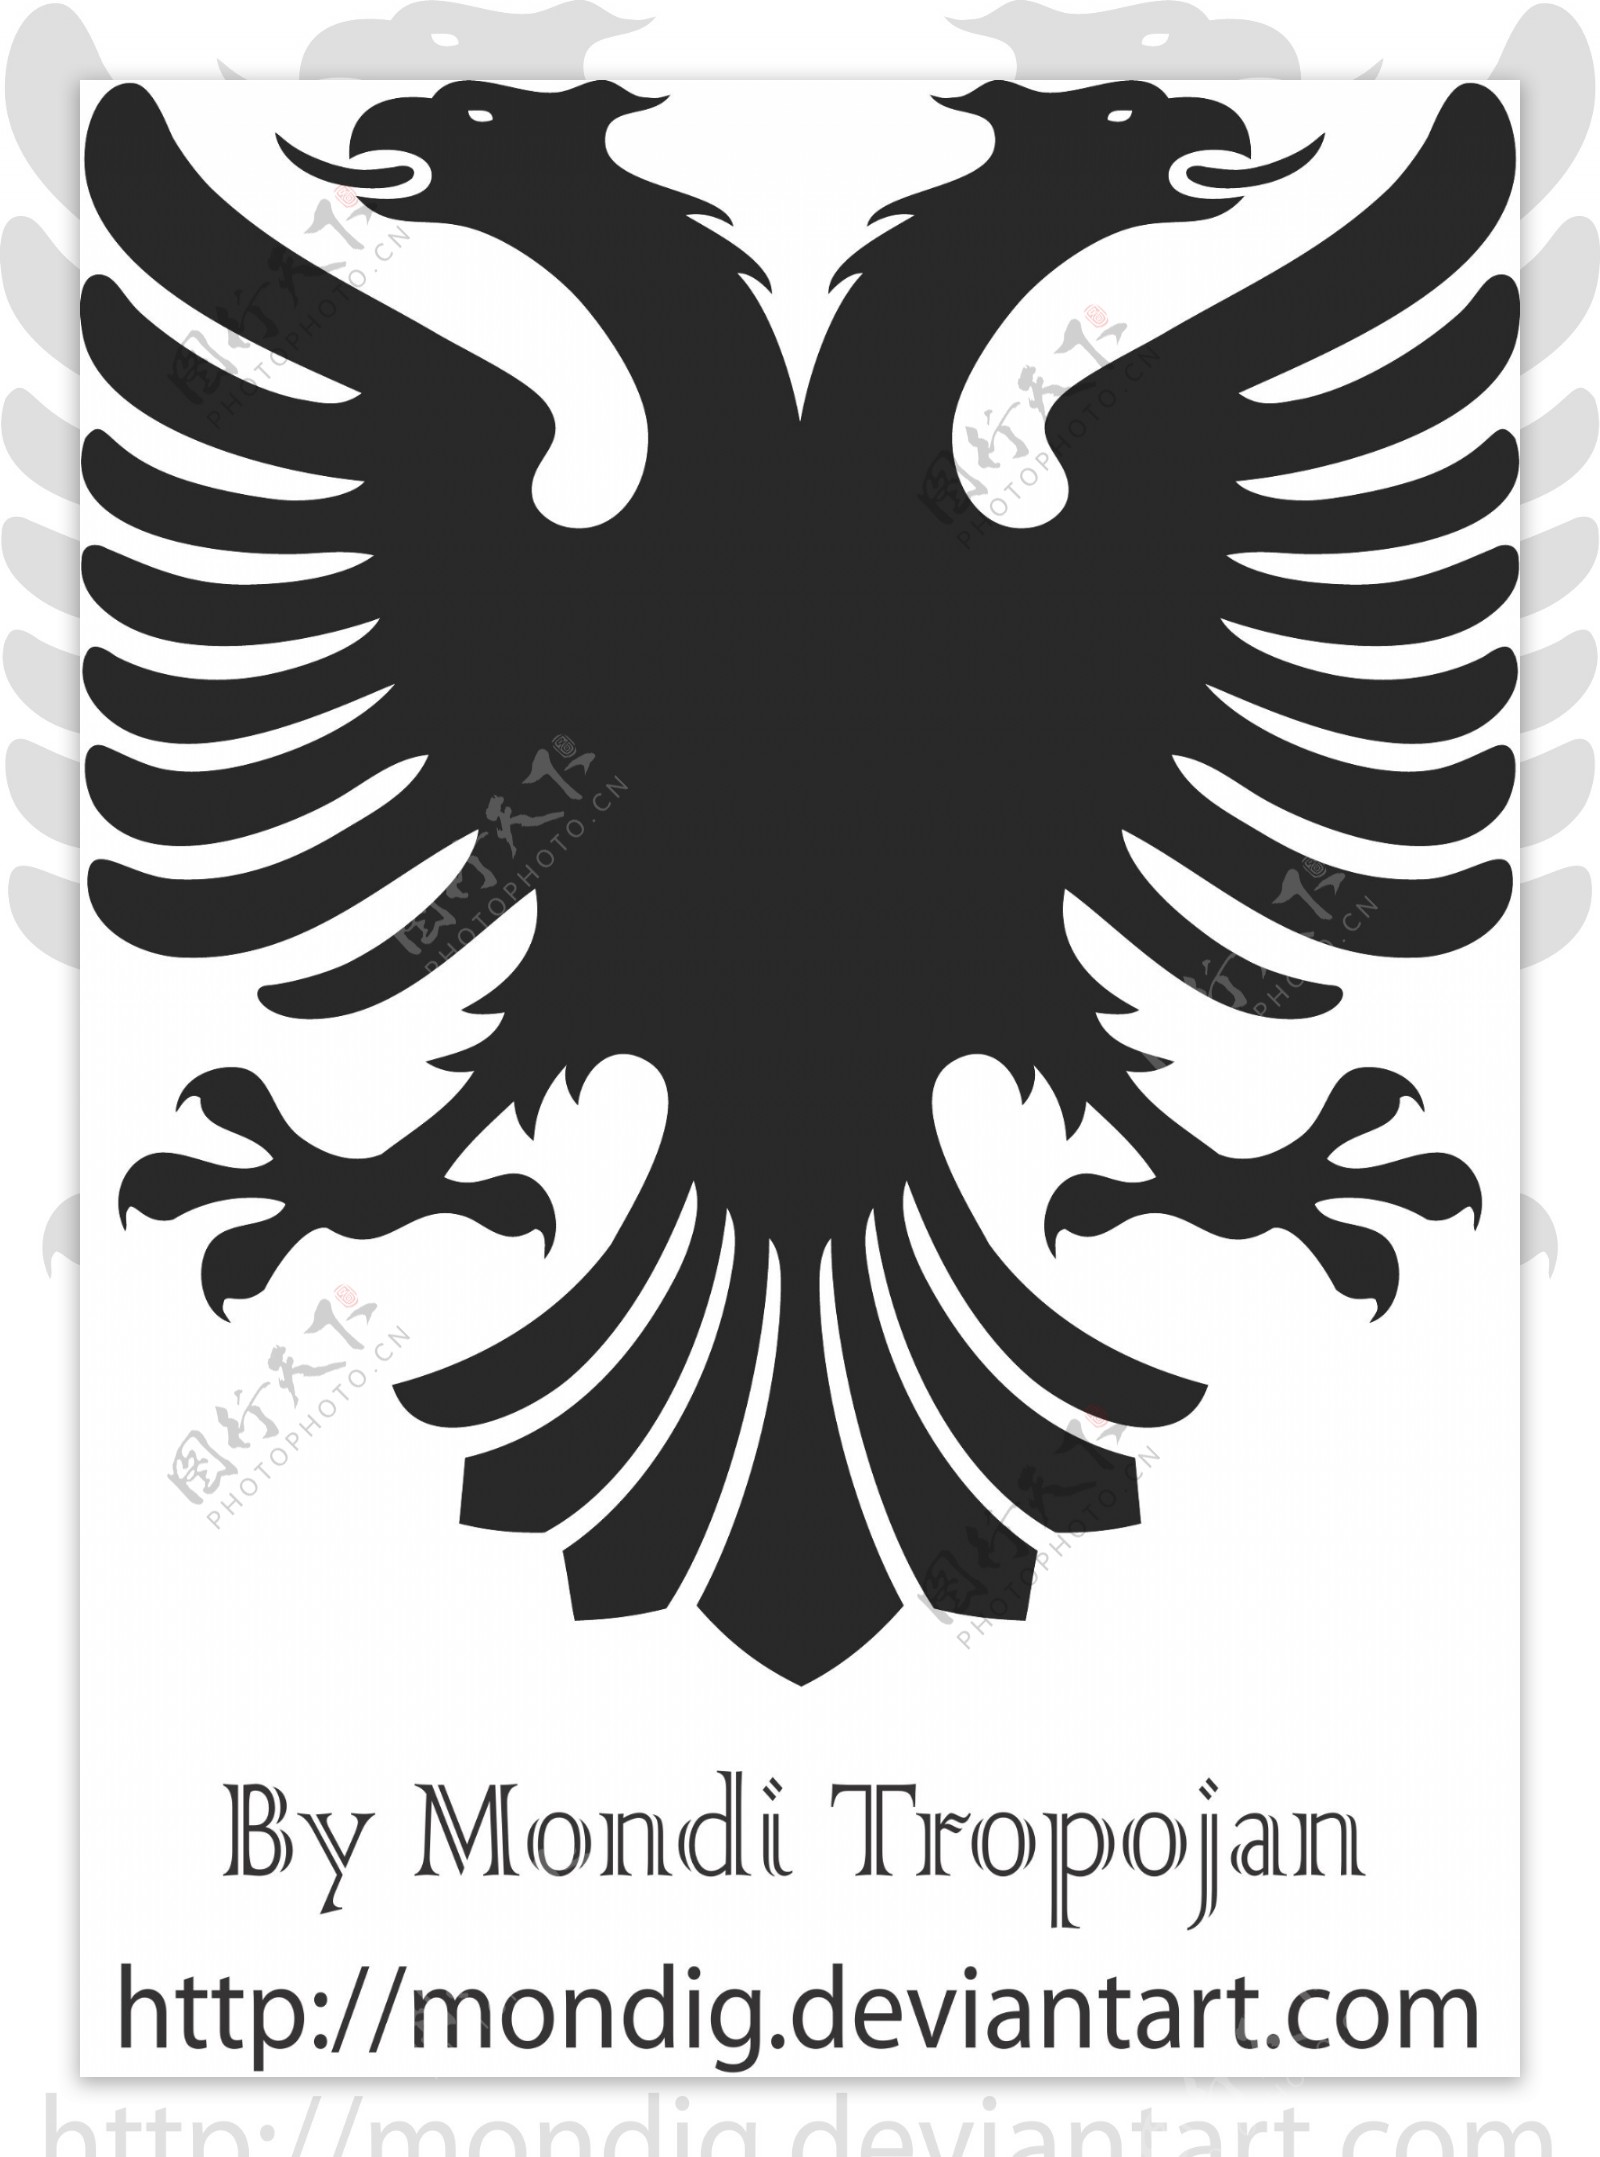 阿尔巴尼亚向量的鹰